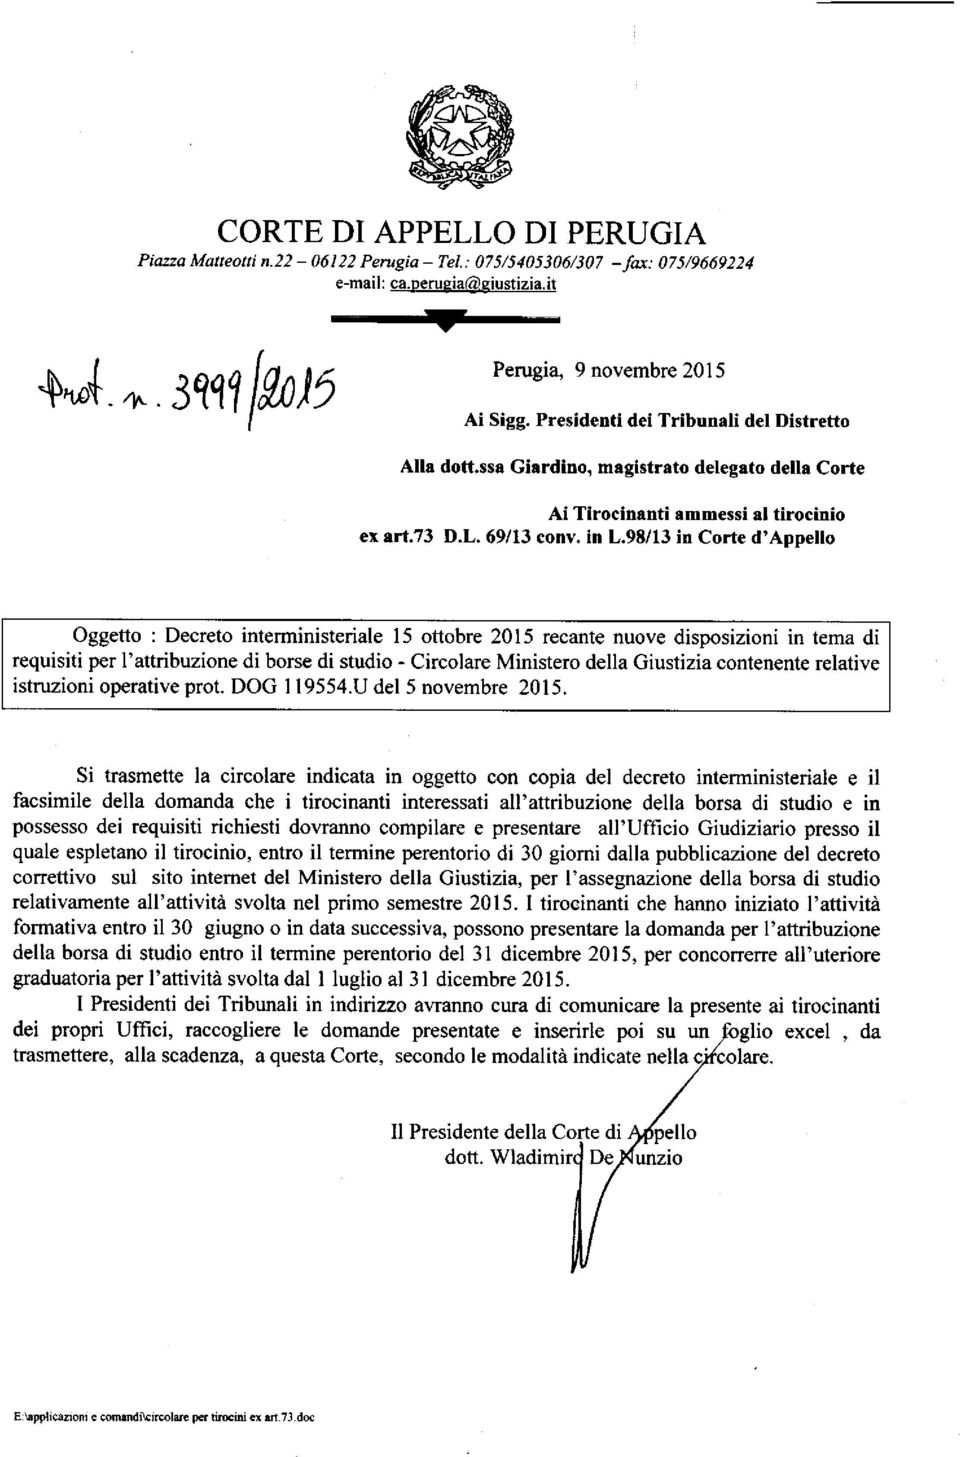 98/13 in Corte d'appello Oggetto : Decreto interministeriale 15 ottobre 2015 recante nuove disposizioni in tema di requisiti per l'attribuzione di borse di studio - Circolare Ministero della